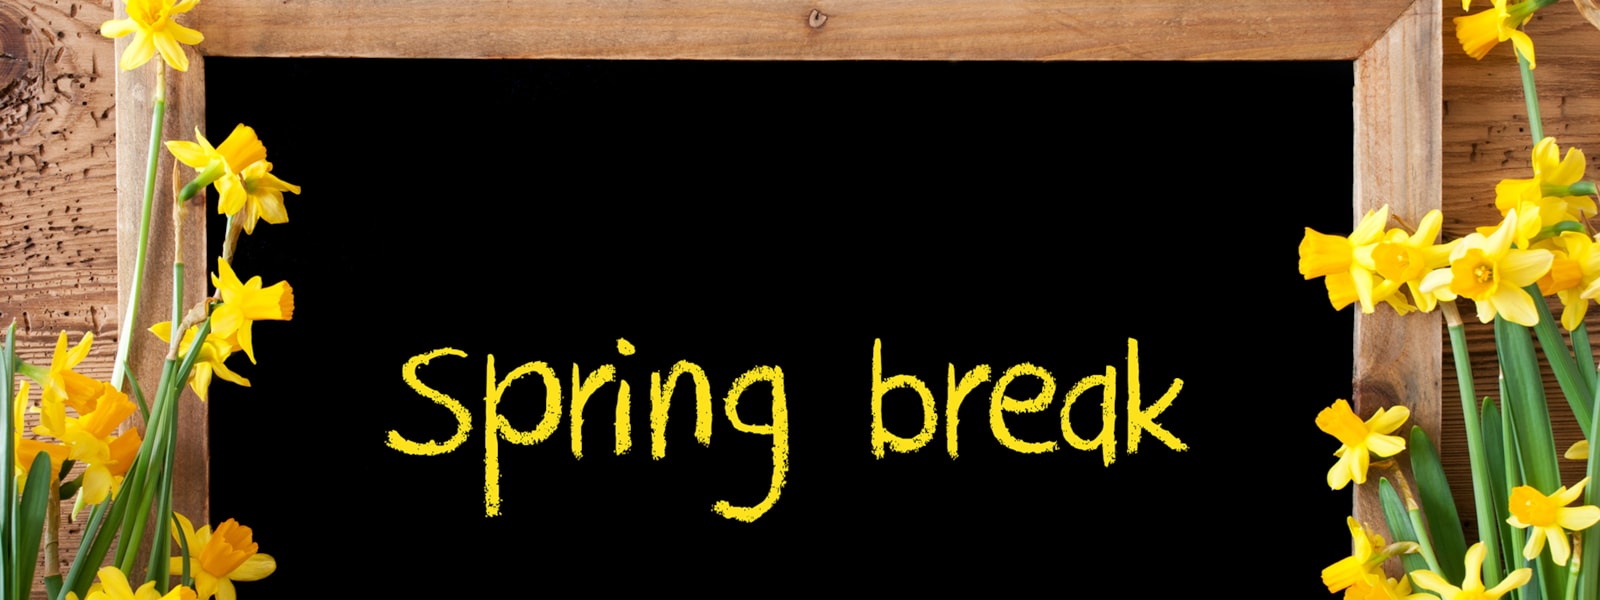 'spring break' written on blackboard with yellow flowers surrounding